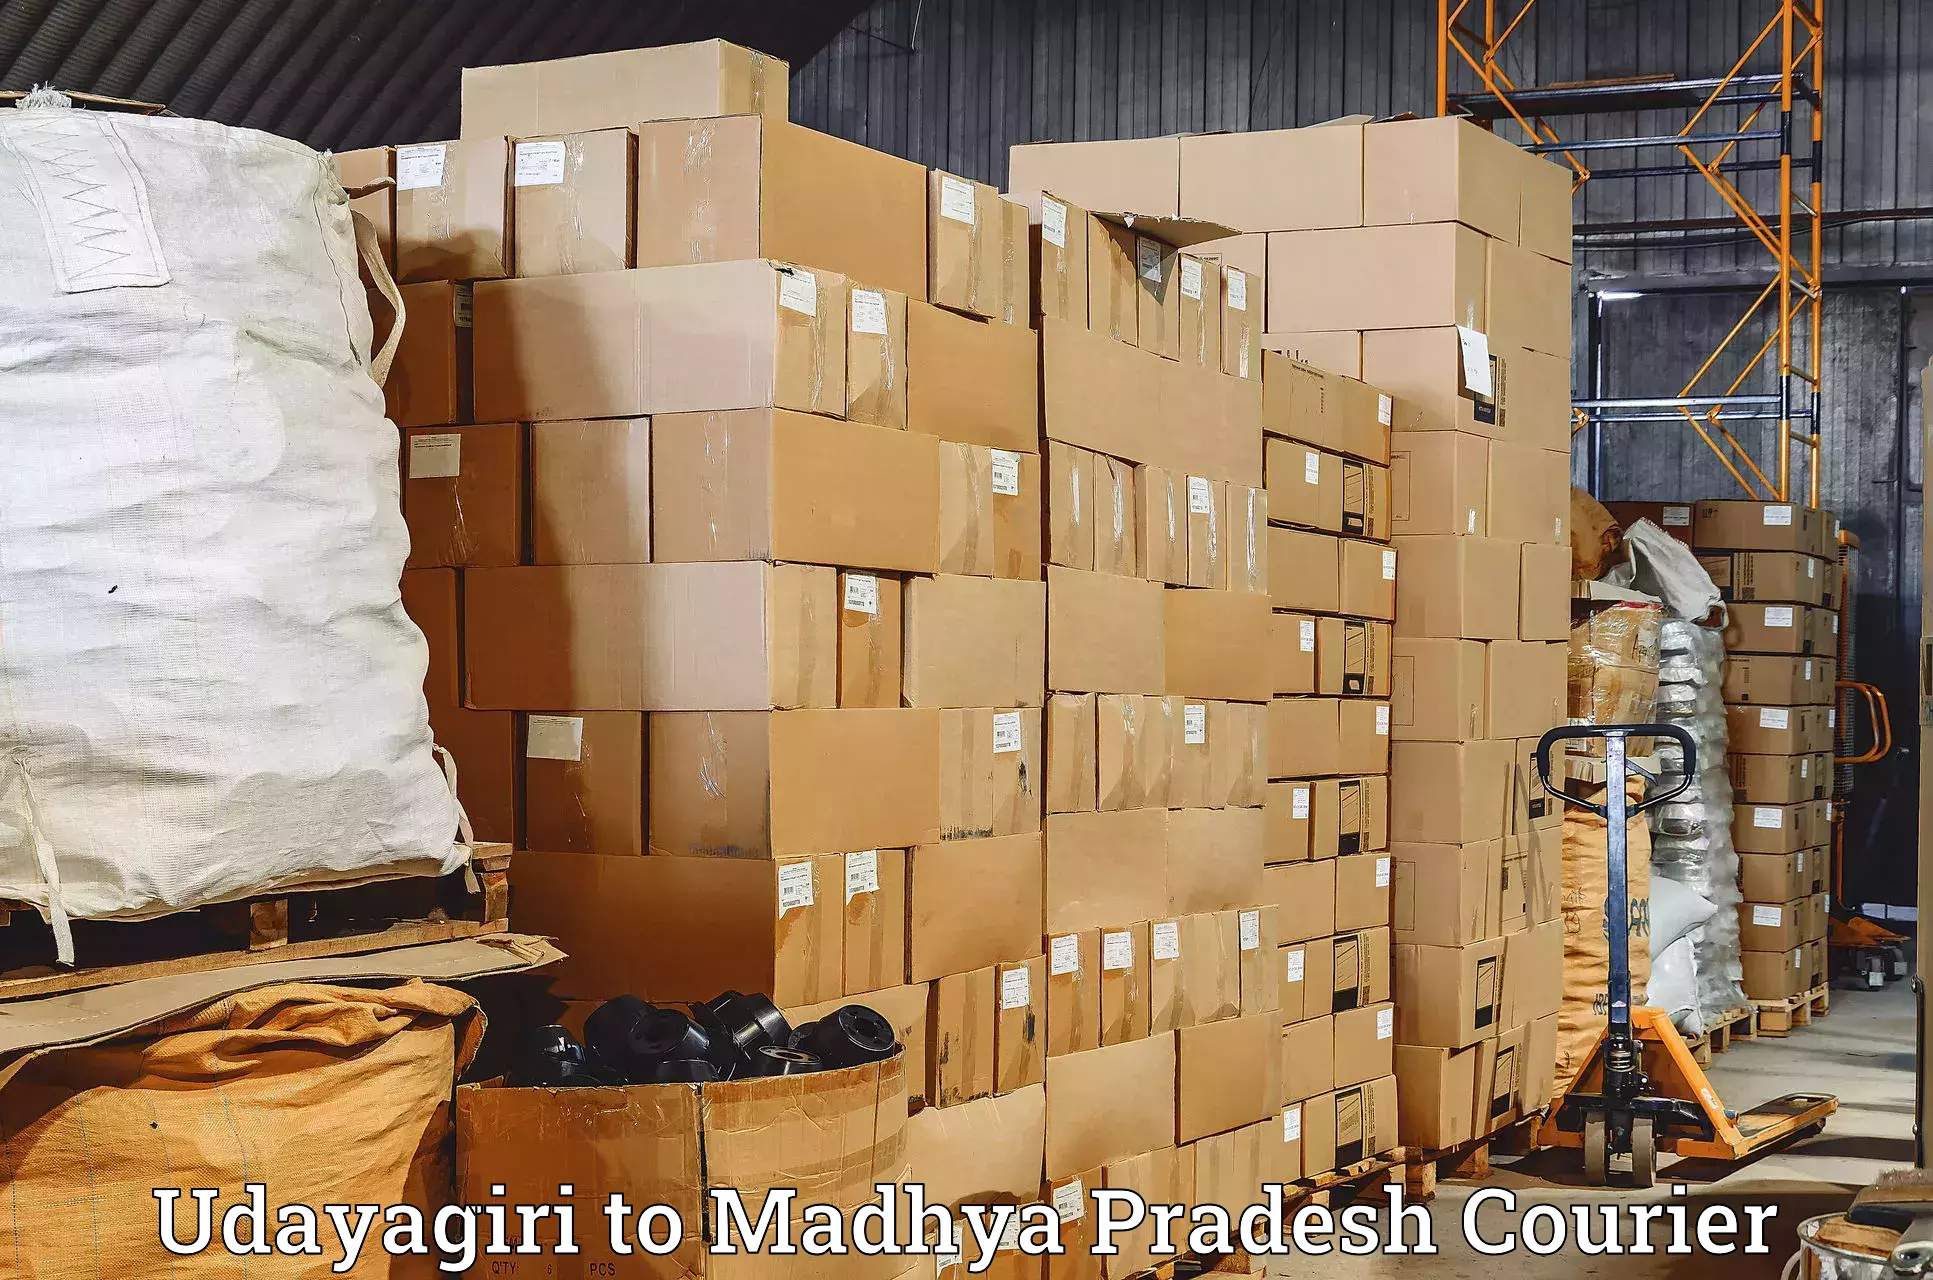 Speedy delivery service Udayagiri to Mundi